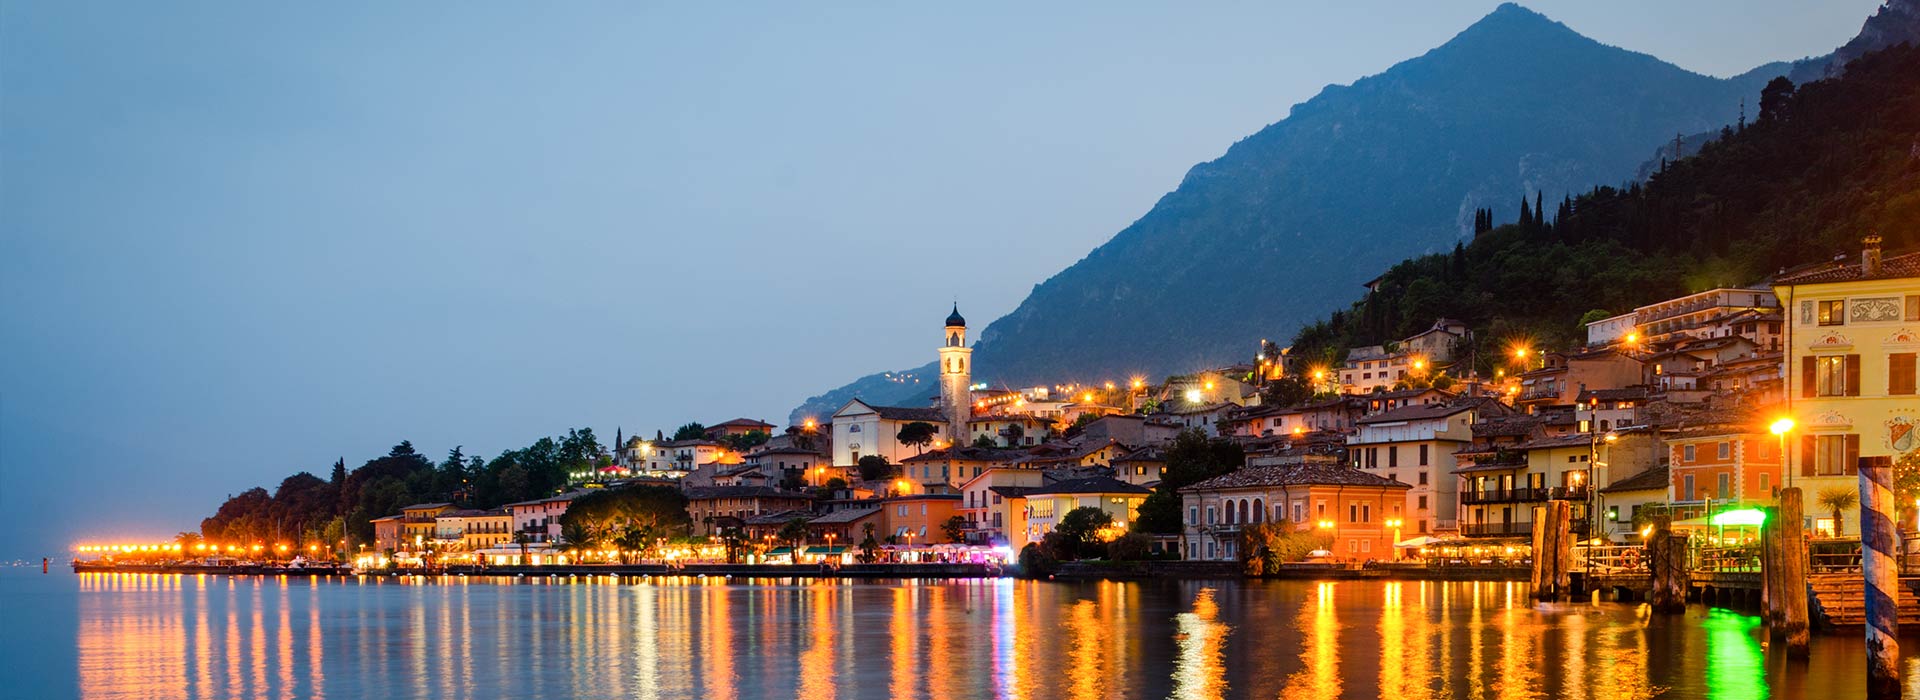 Tour Lake of Garda Italy Region